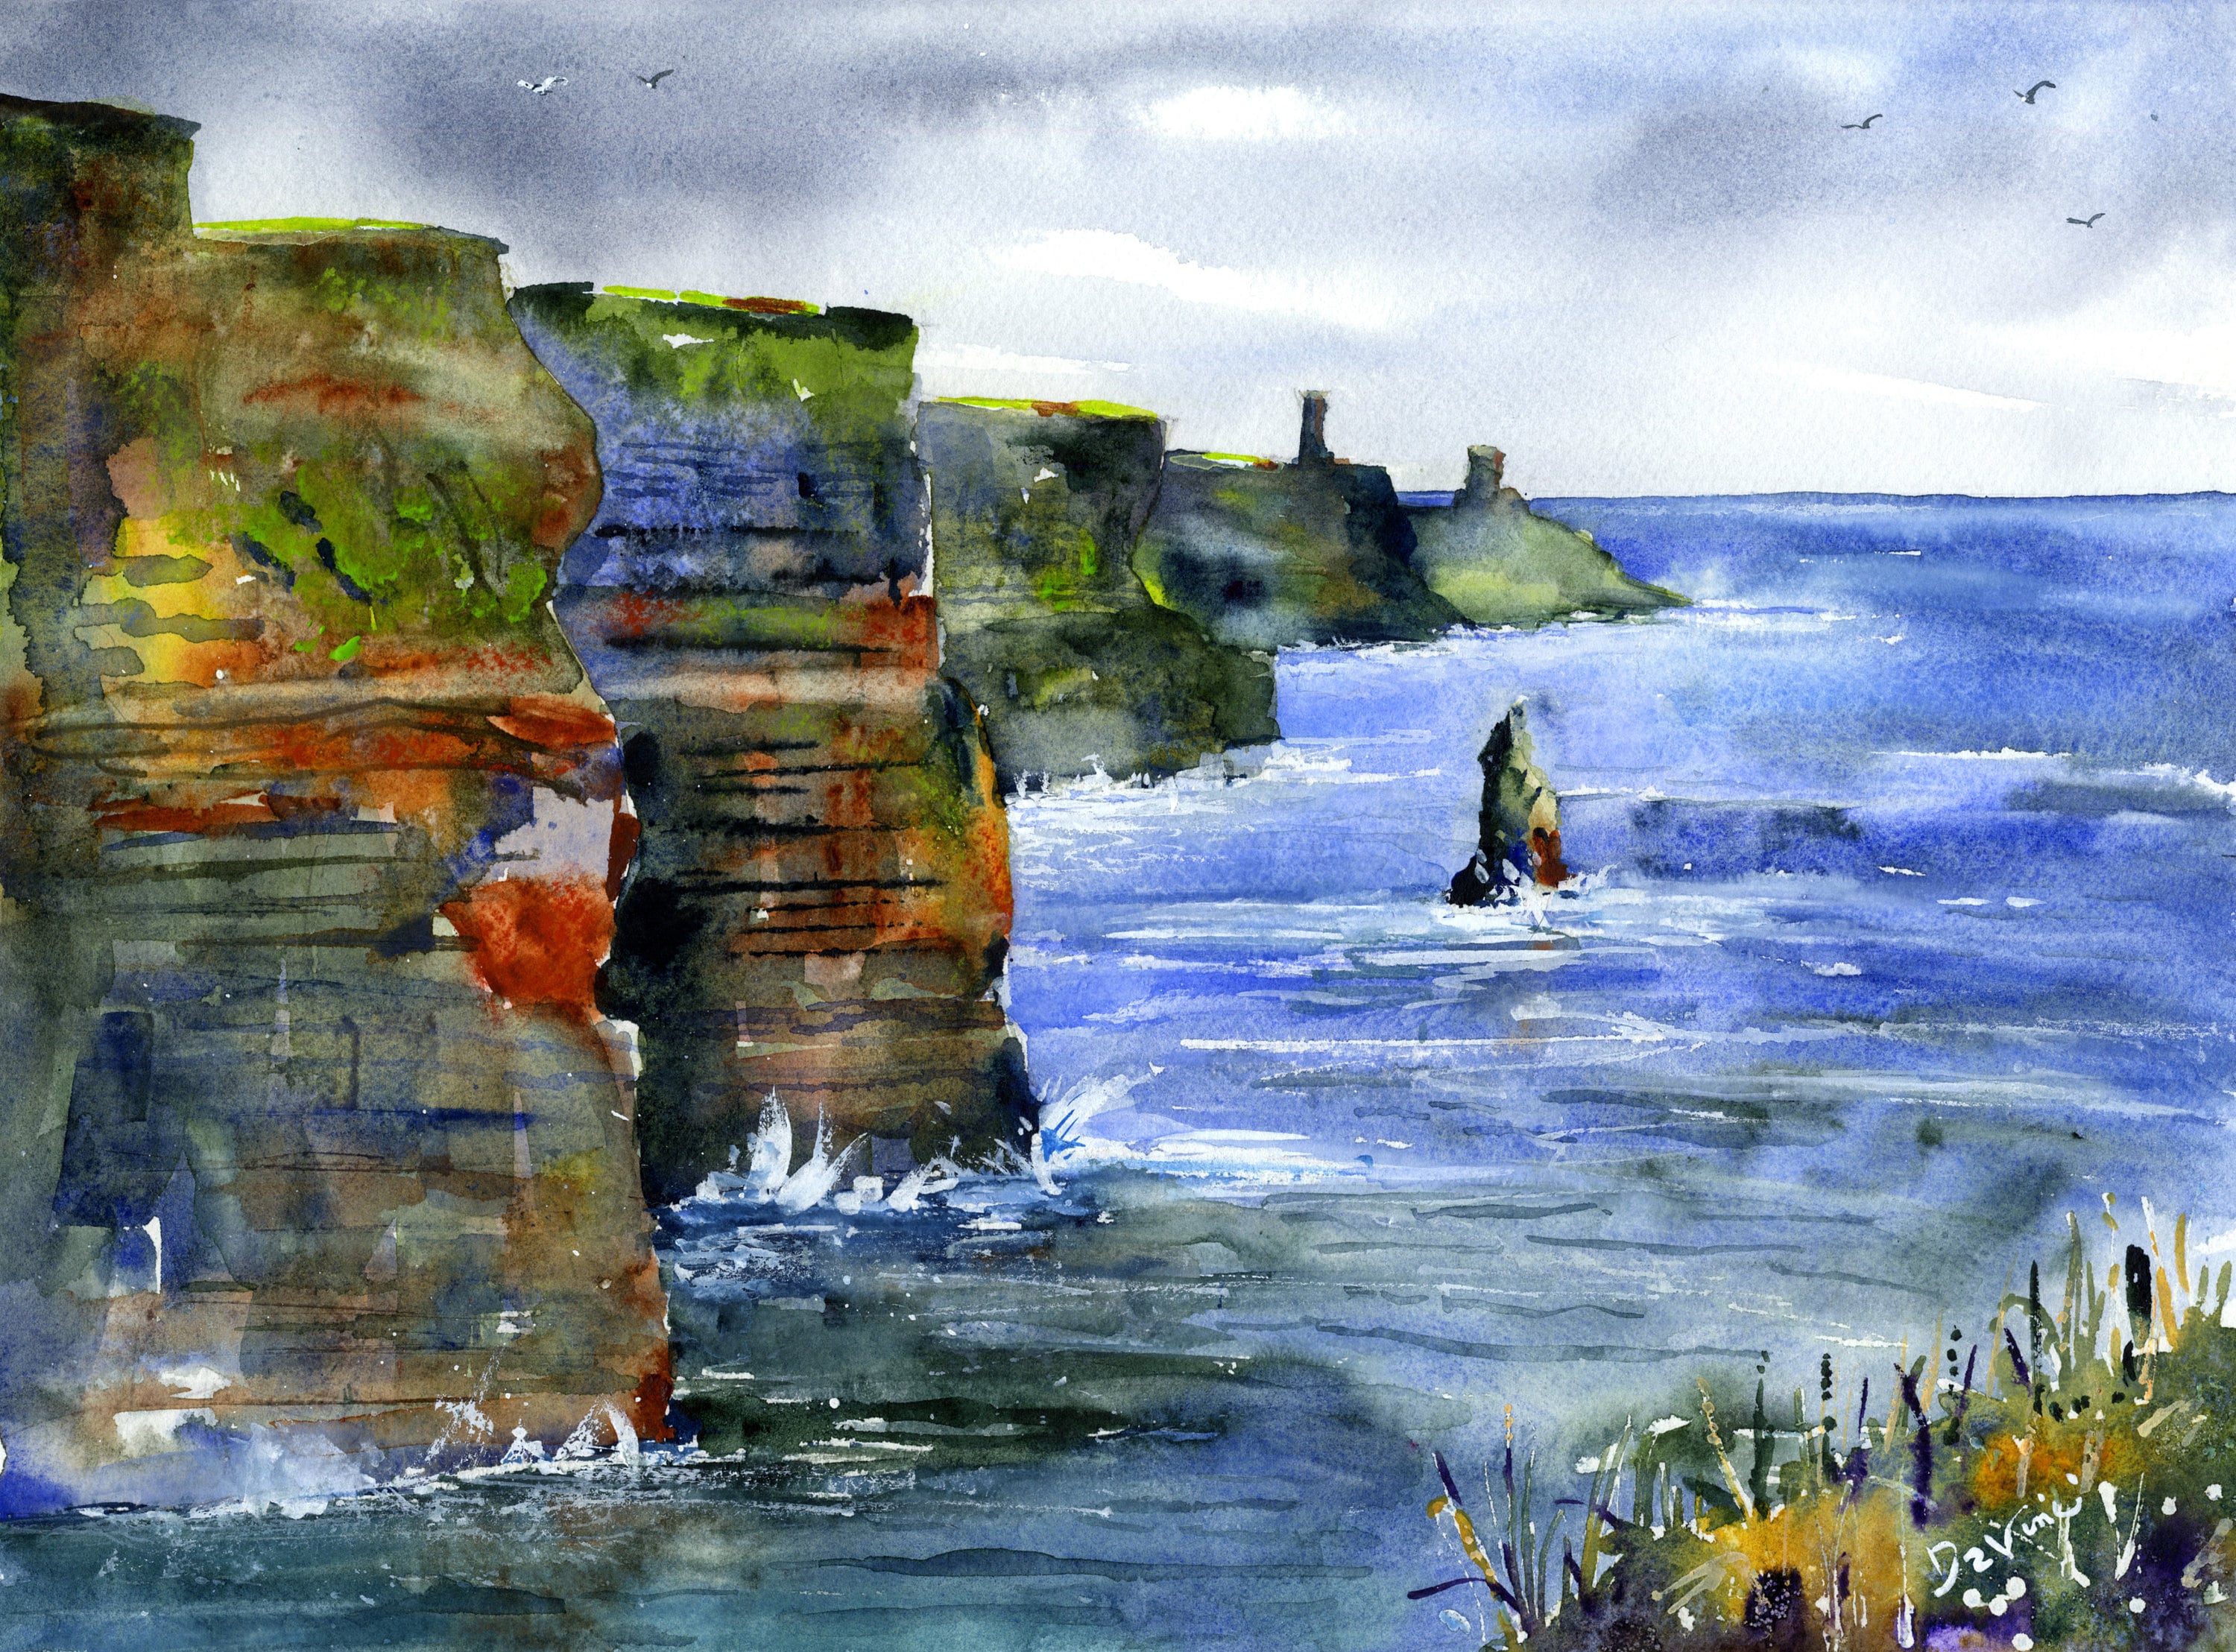 Inisheer: Ireland watercolor painting, Irish painting, Ireland print, Irish  art,Irish cottage, Ireland wall art, Irish wall decor Ireland